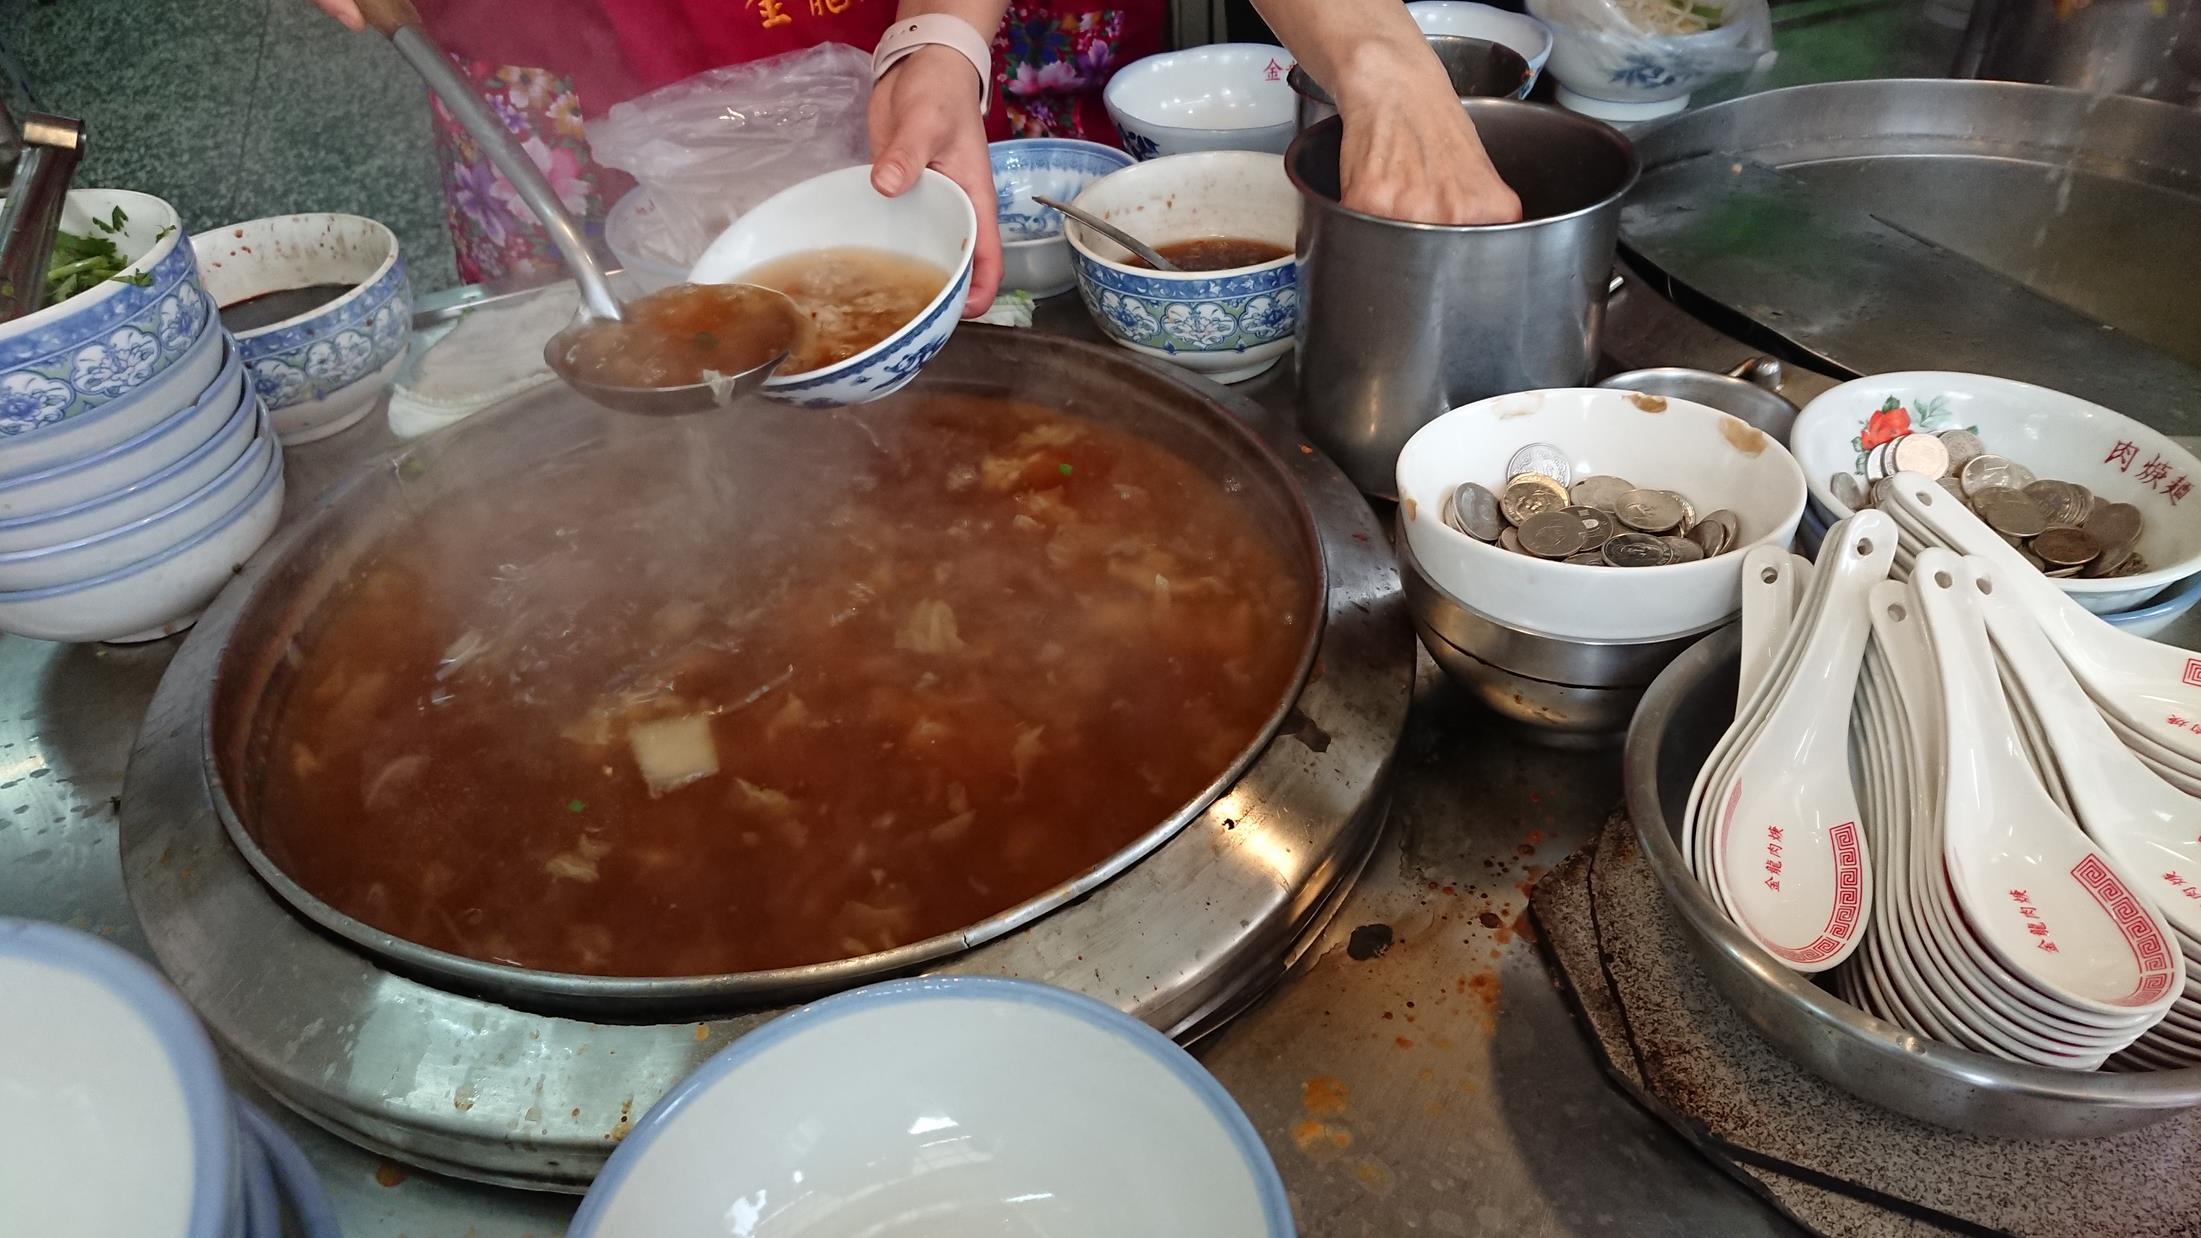 食記 金龍肉焿 基隆三沙灣的人氣肉羹湯 基隆在地美食 台灣貪吃胖的玩樂故事